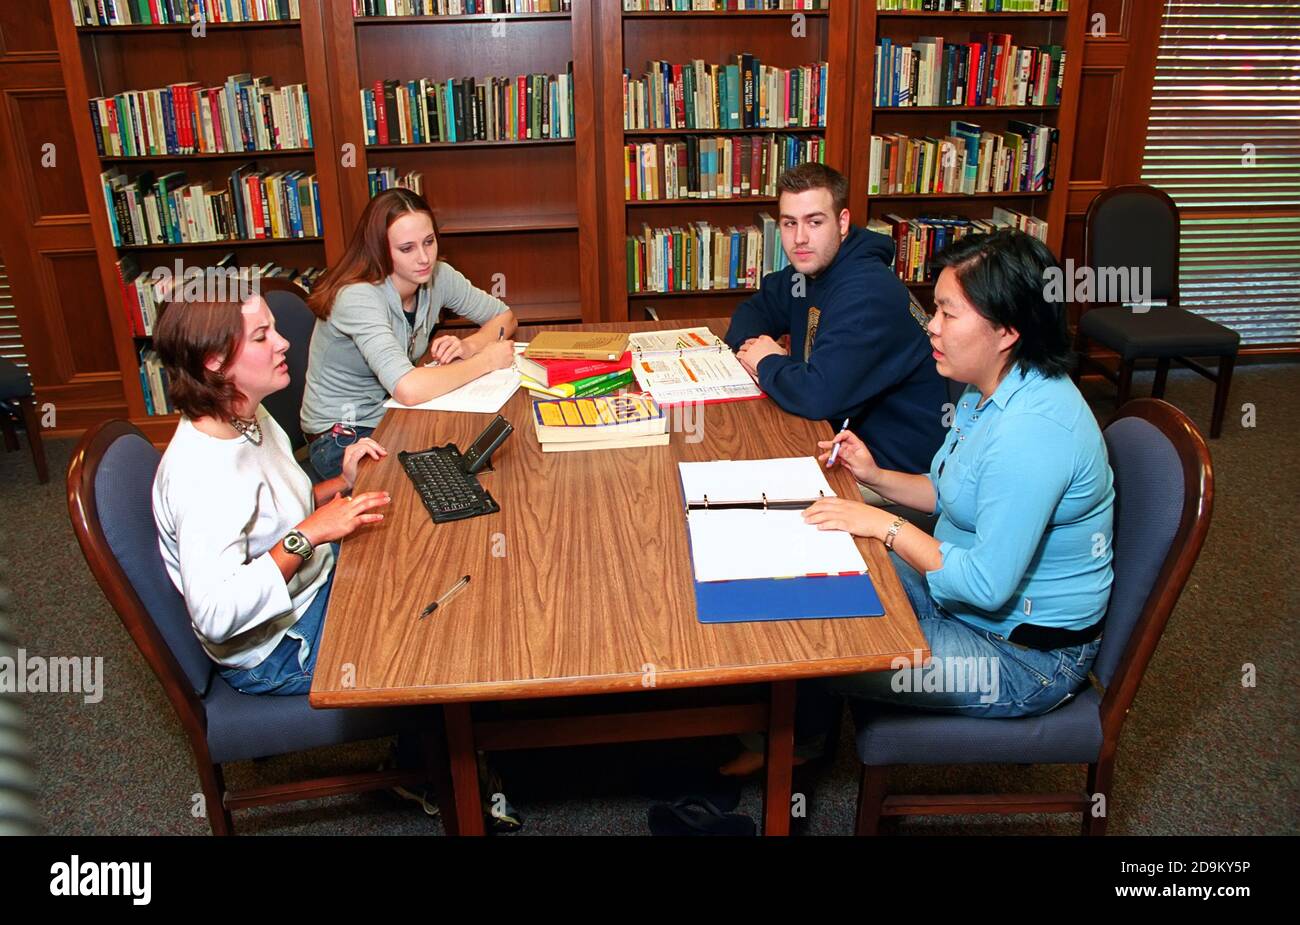 Männliche und weibliche Studenten treffen sich in der Bibliothek zu tun Forschungsarbeit mit Lehramtslehrerin - Computer sichtbar Stockfoto